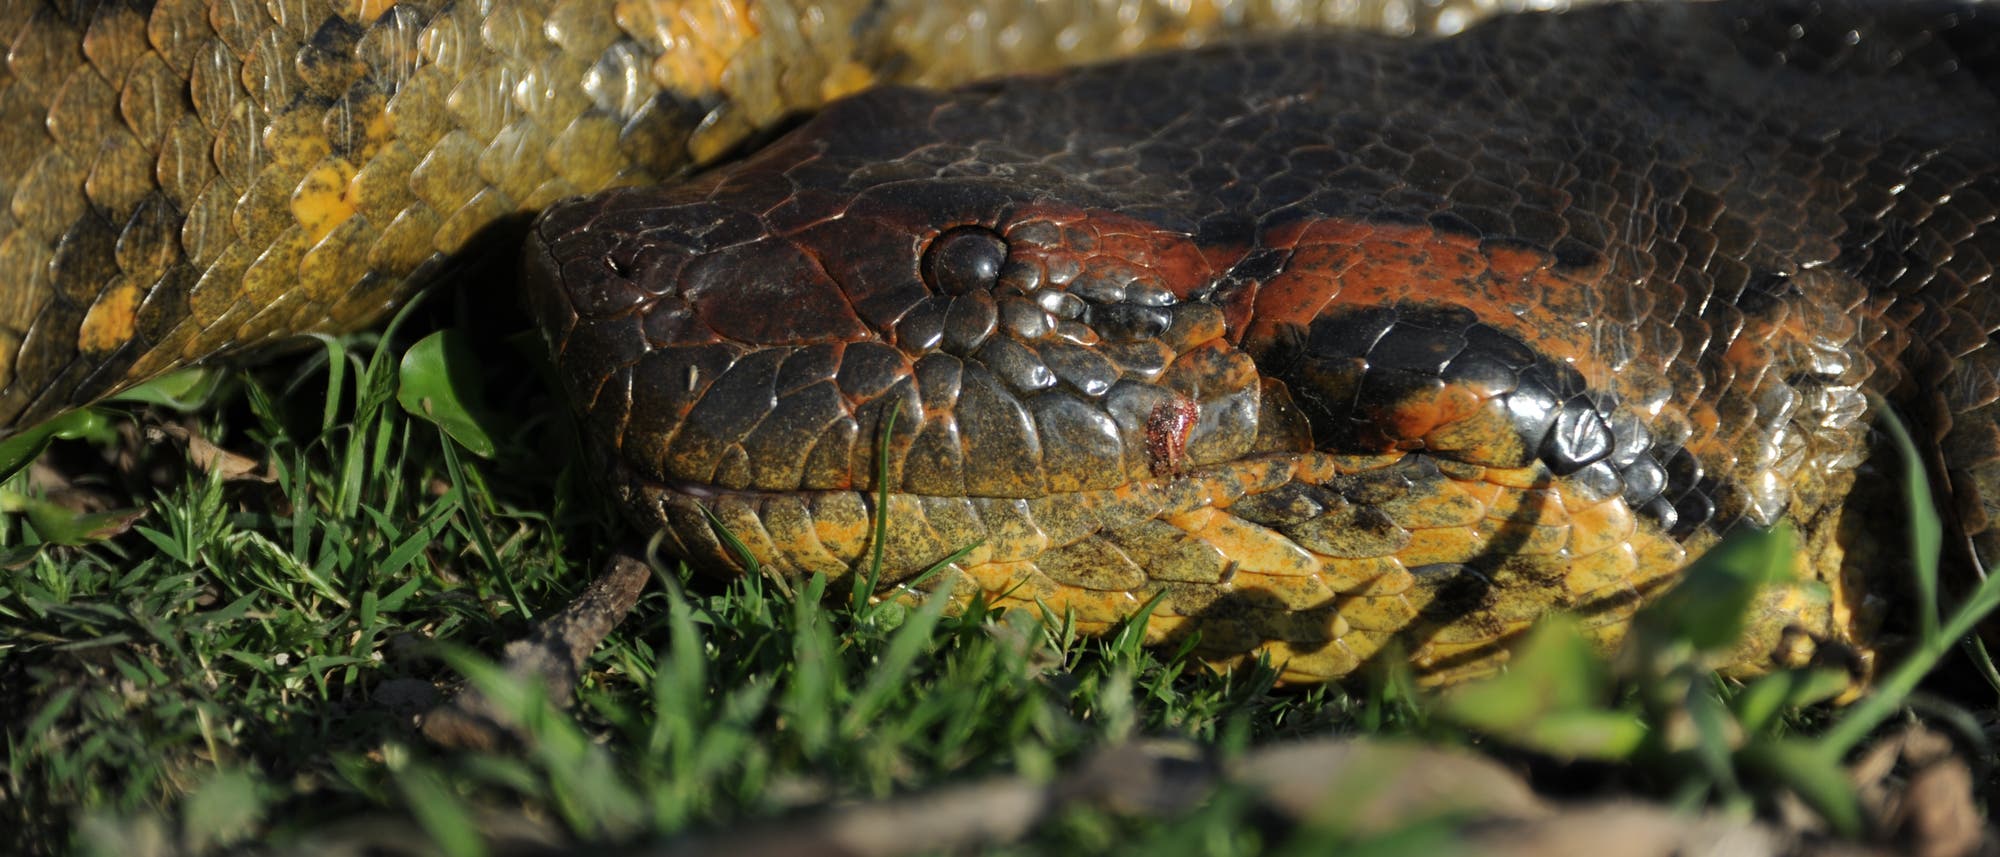 Detailaufnahme des Kopfes der neuen Anakonda-Art: Der Schädel ist gelblich-dunkelbraun-rötlich gefärbt und besitzt ein schwarzes Auge